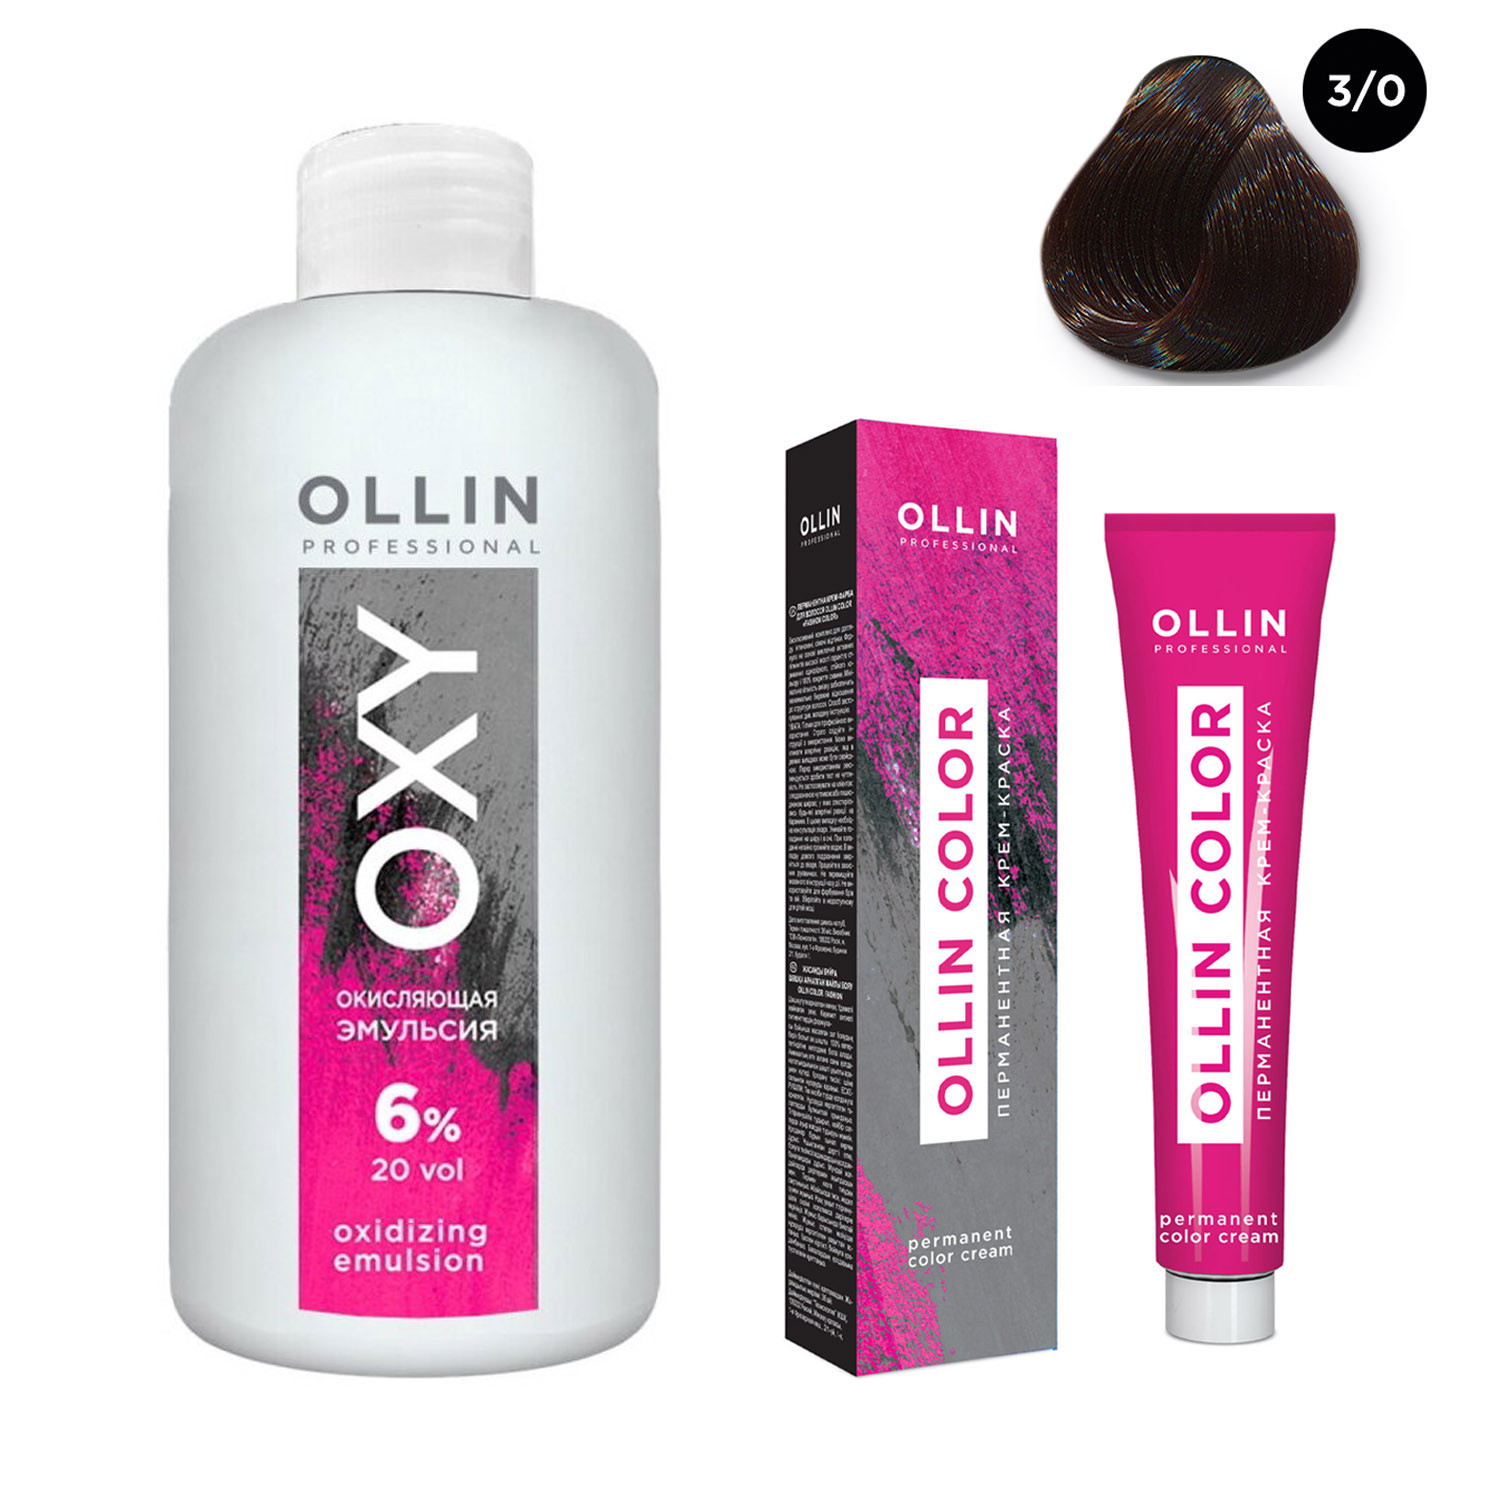 Купить Ollin Professional Набор Перманентная крем-краска для волос Ollin Color оттенок 3/0 темный шатен 100 мл + Окисляющая эмульсия Oxy 6% 150 мл (Ollin Professional, Ollin Color), Россия